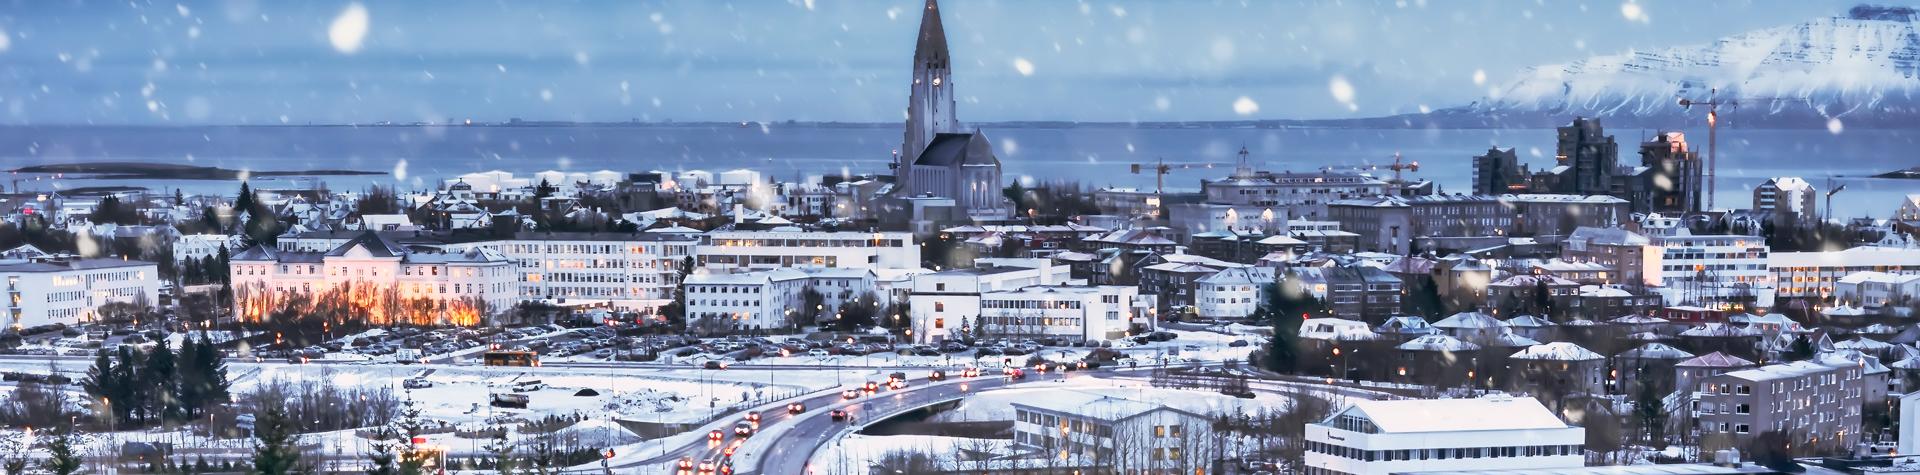 Reykjavik på vintern, Island.